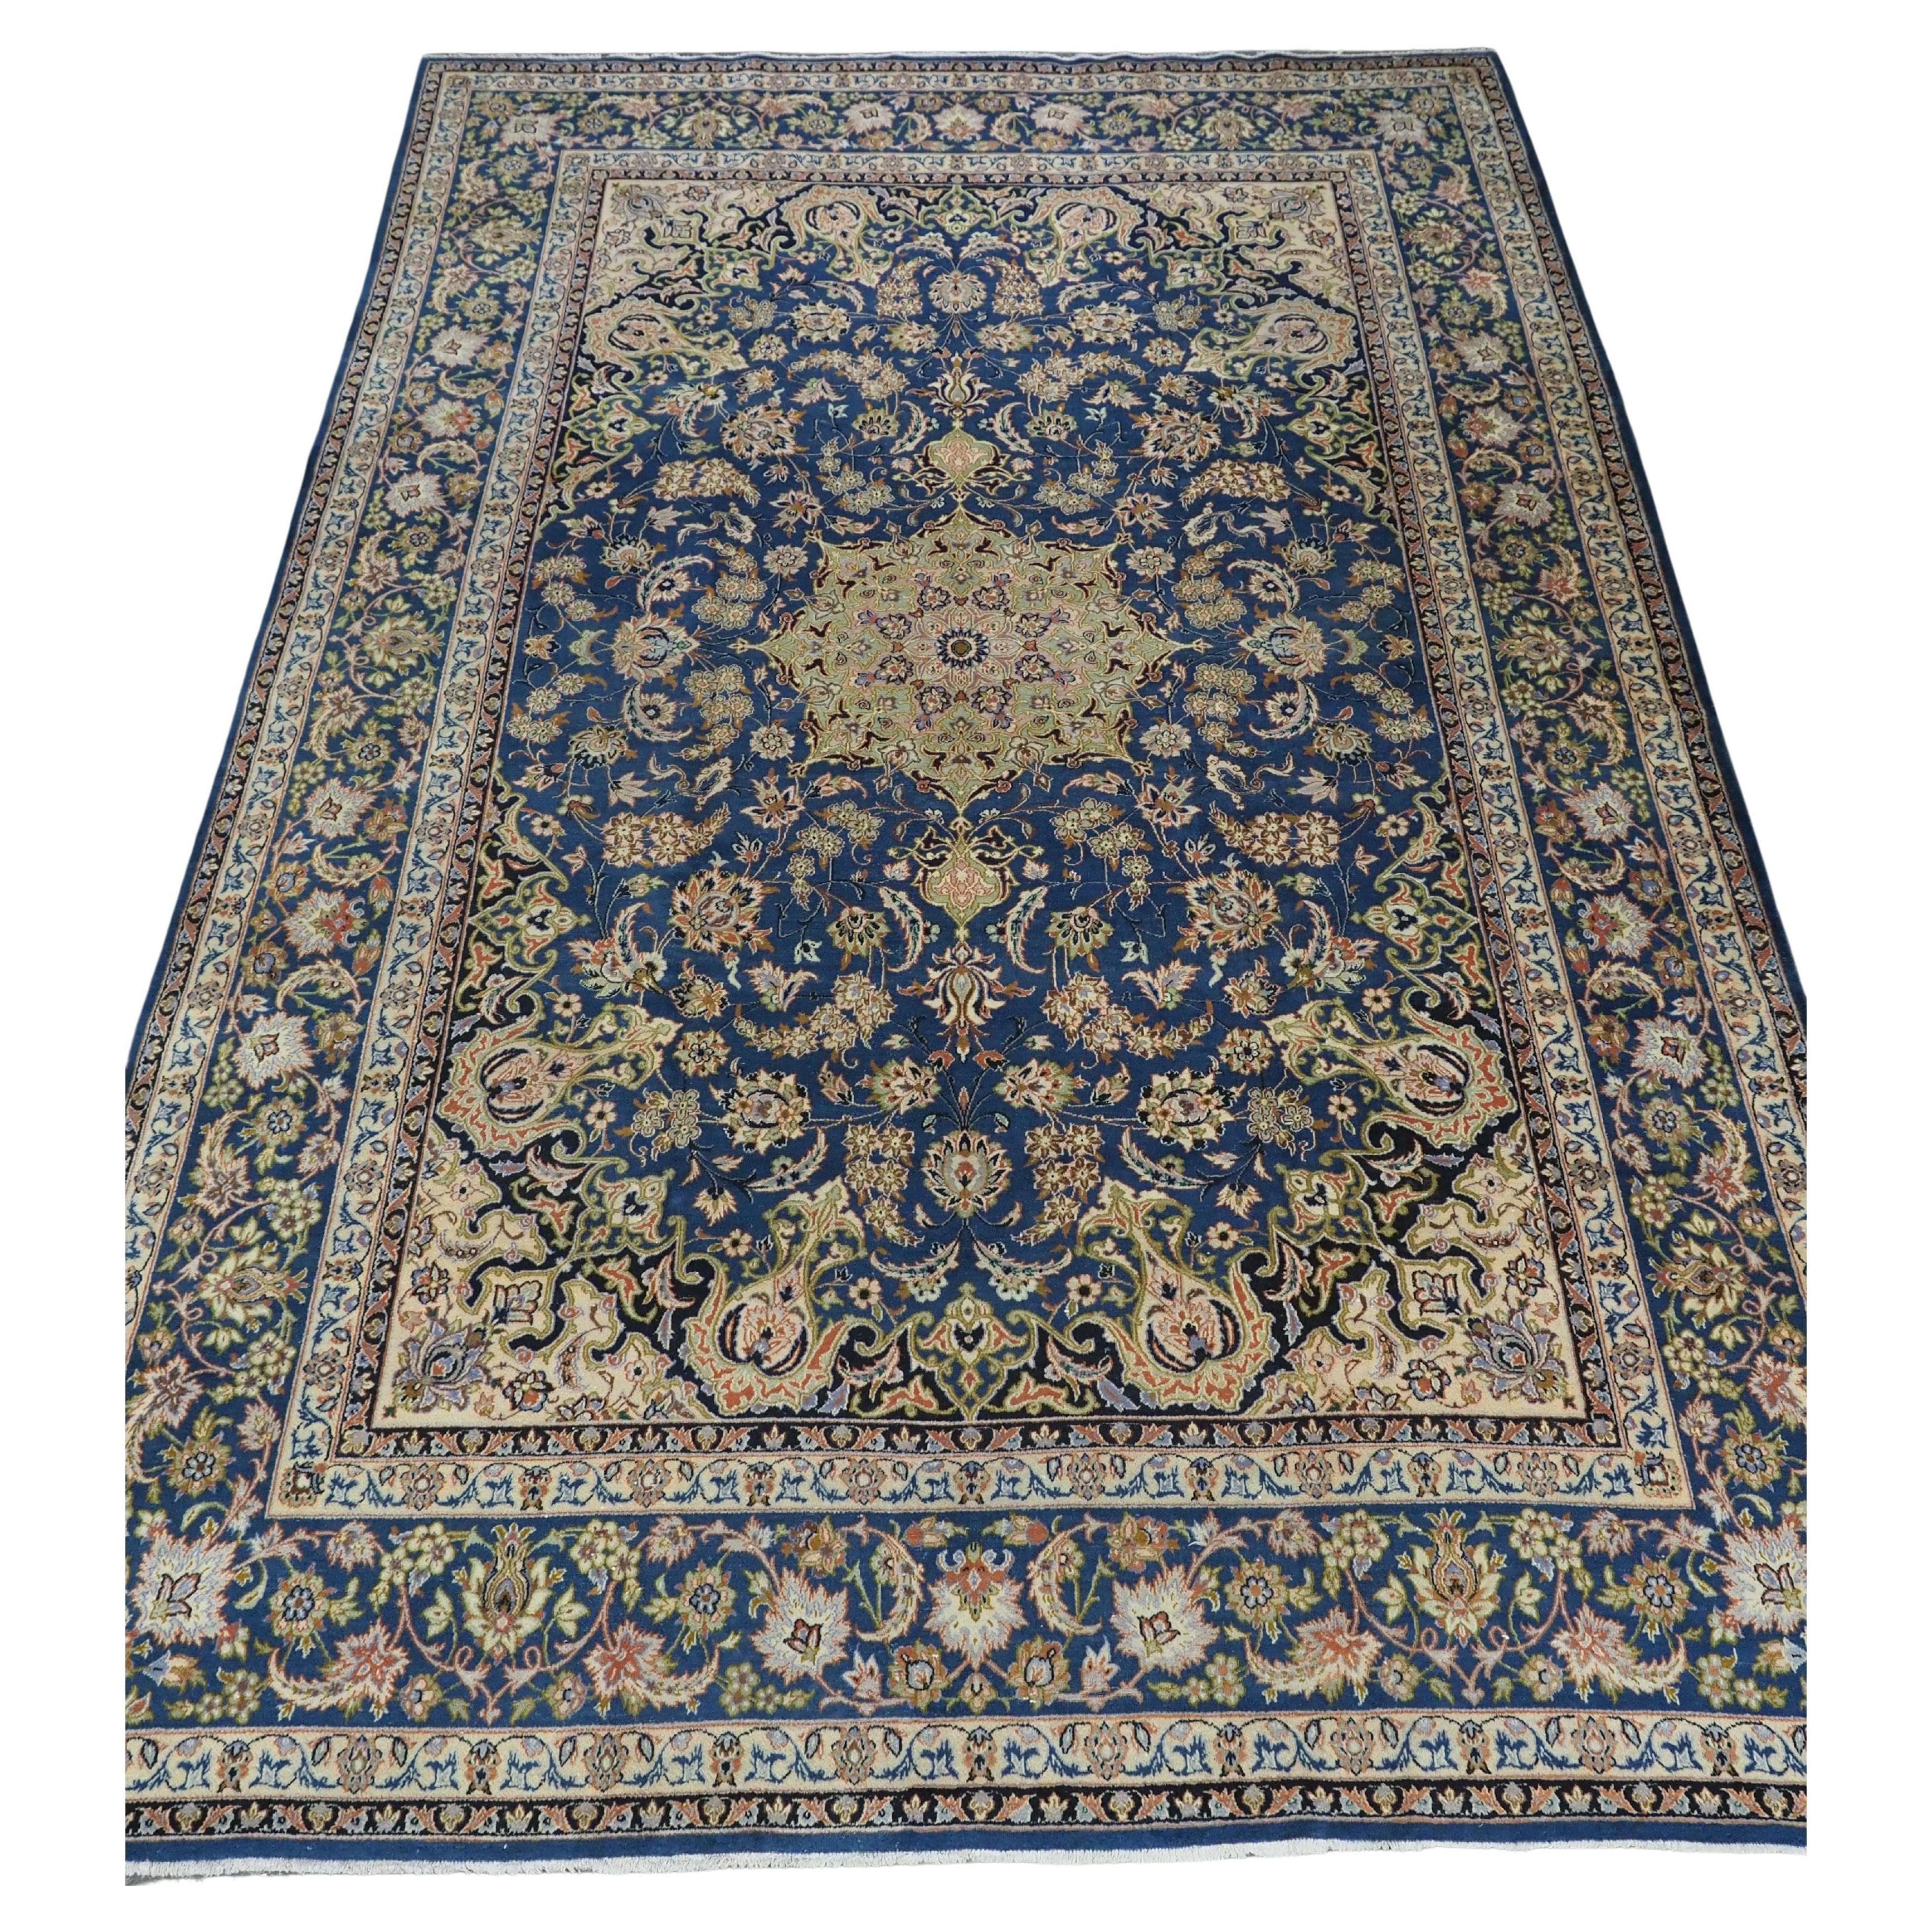 Vintage By  Kashan Teppich der traditionellen  Entwurf in einer großen Raumgröße.